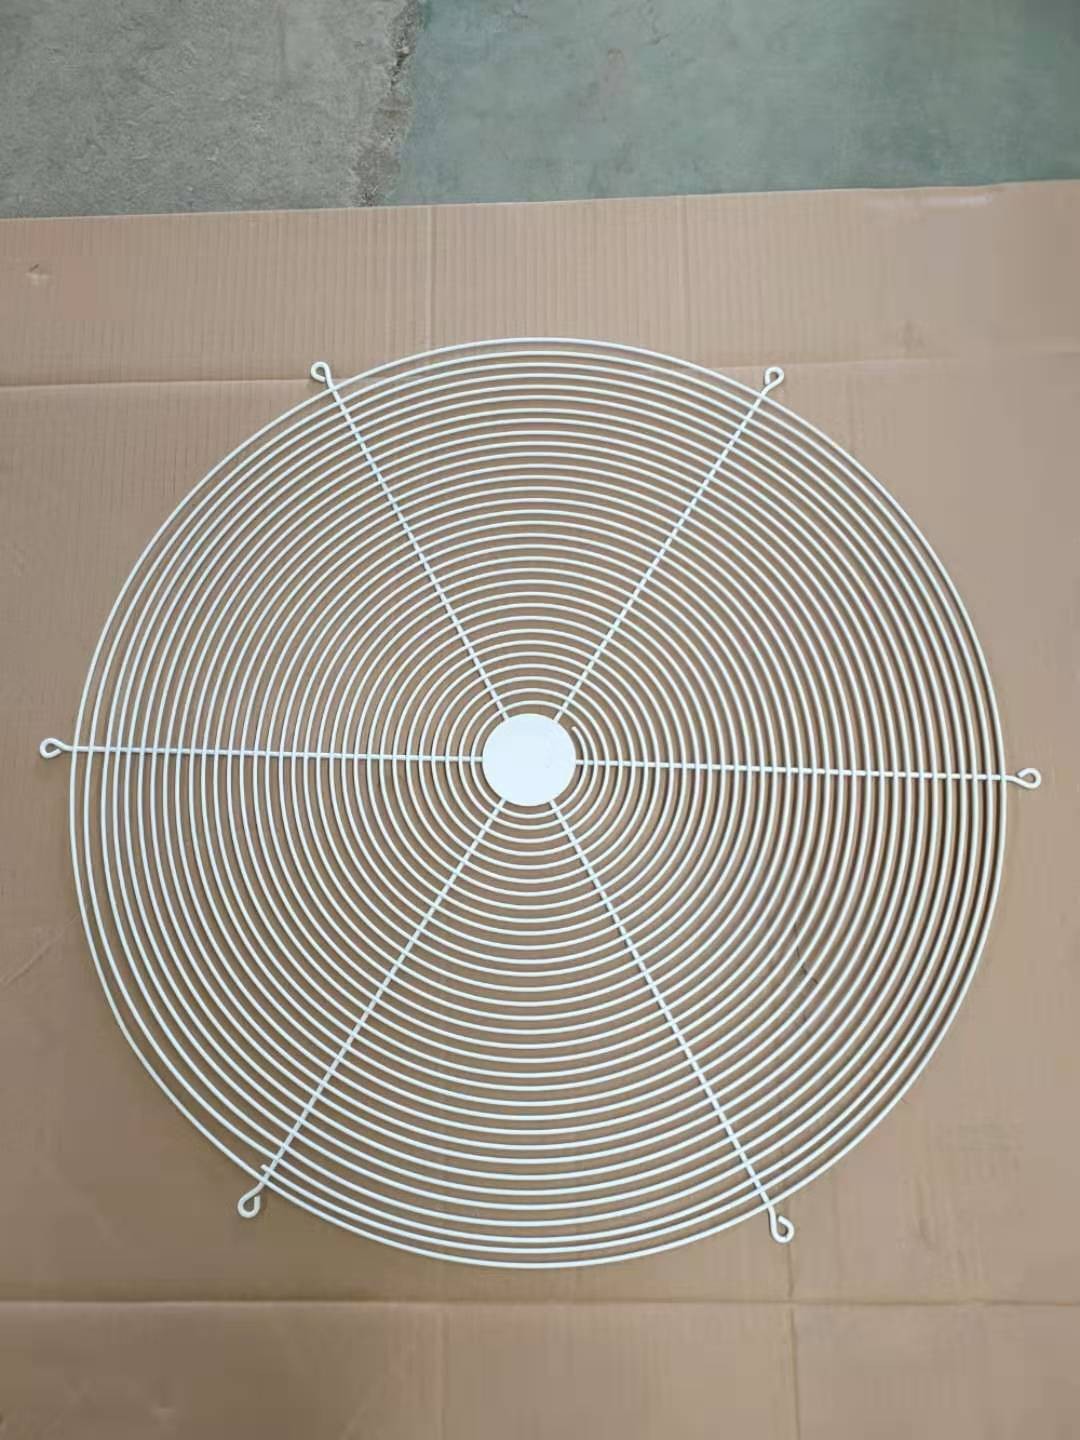 我公司所产风机罩系列产品主要有同心圆网圈和螺线形网圈两种形式